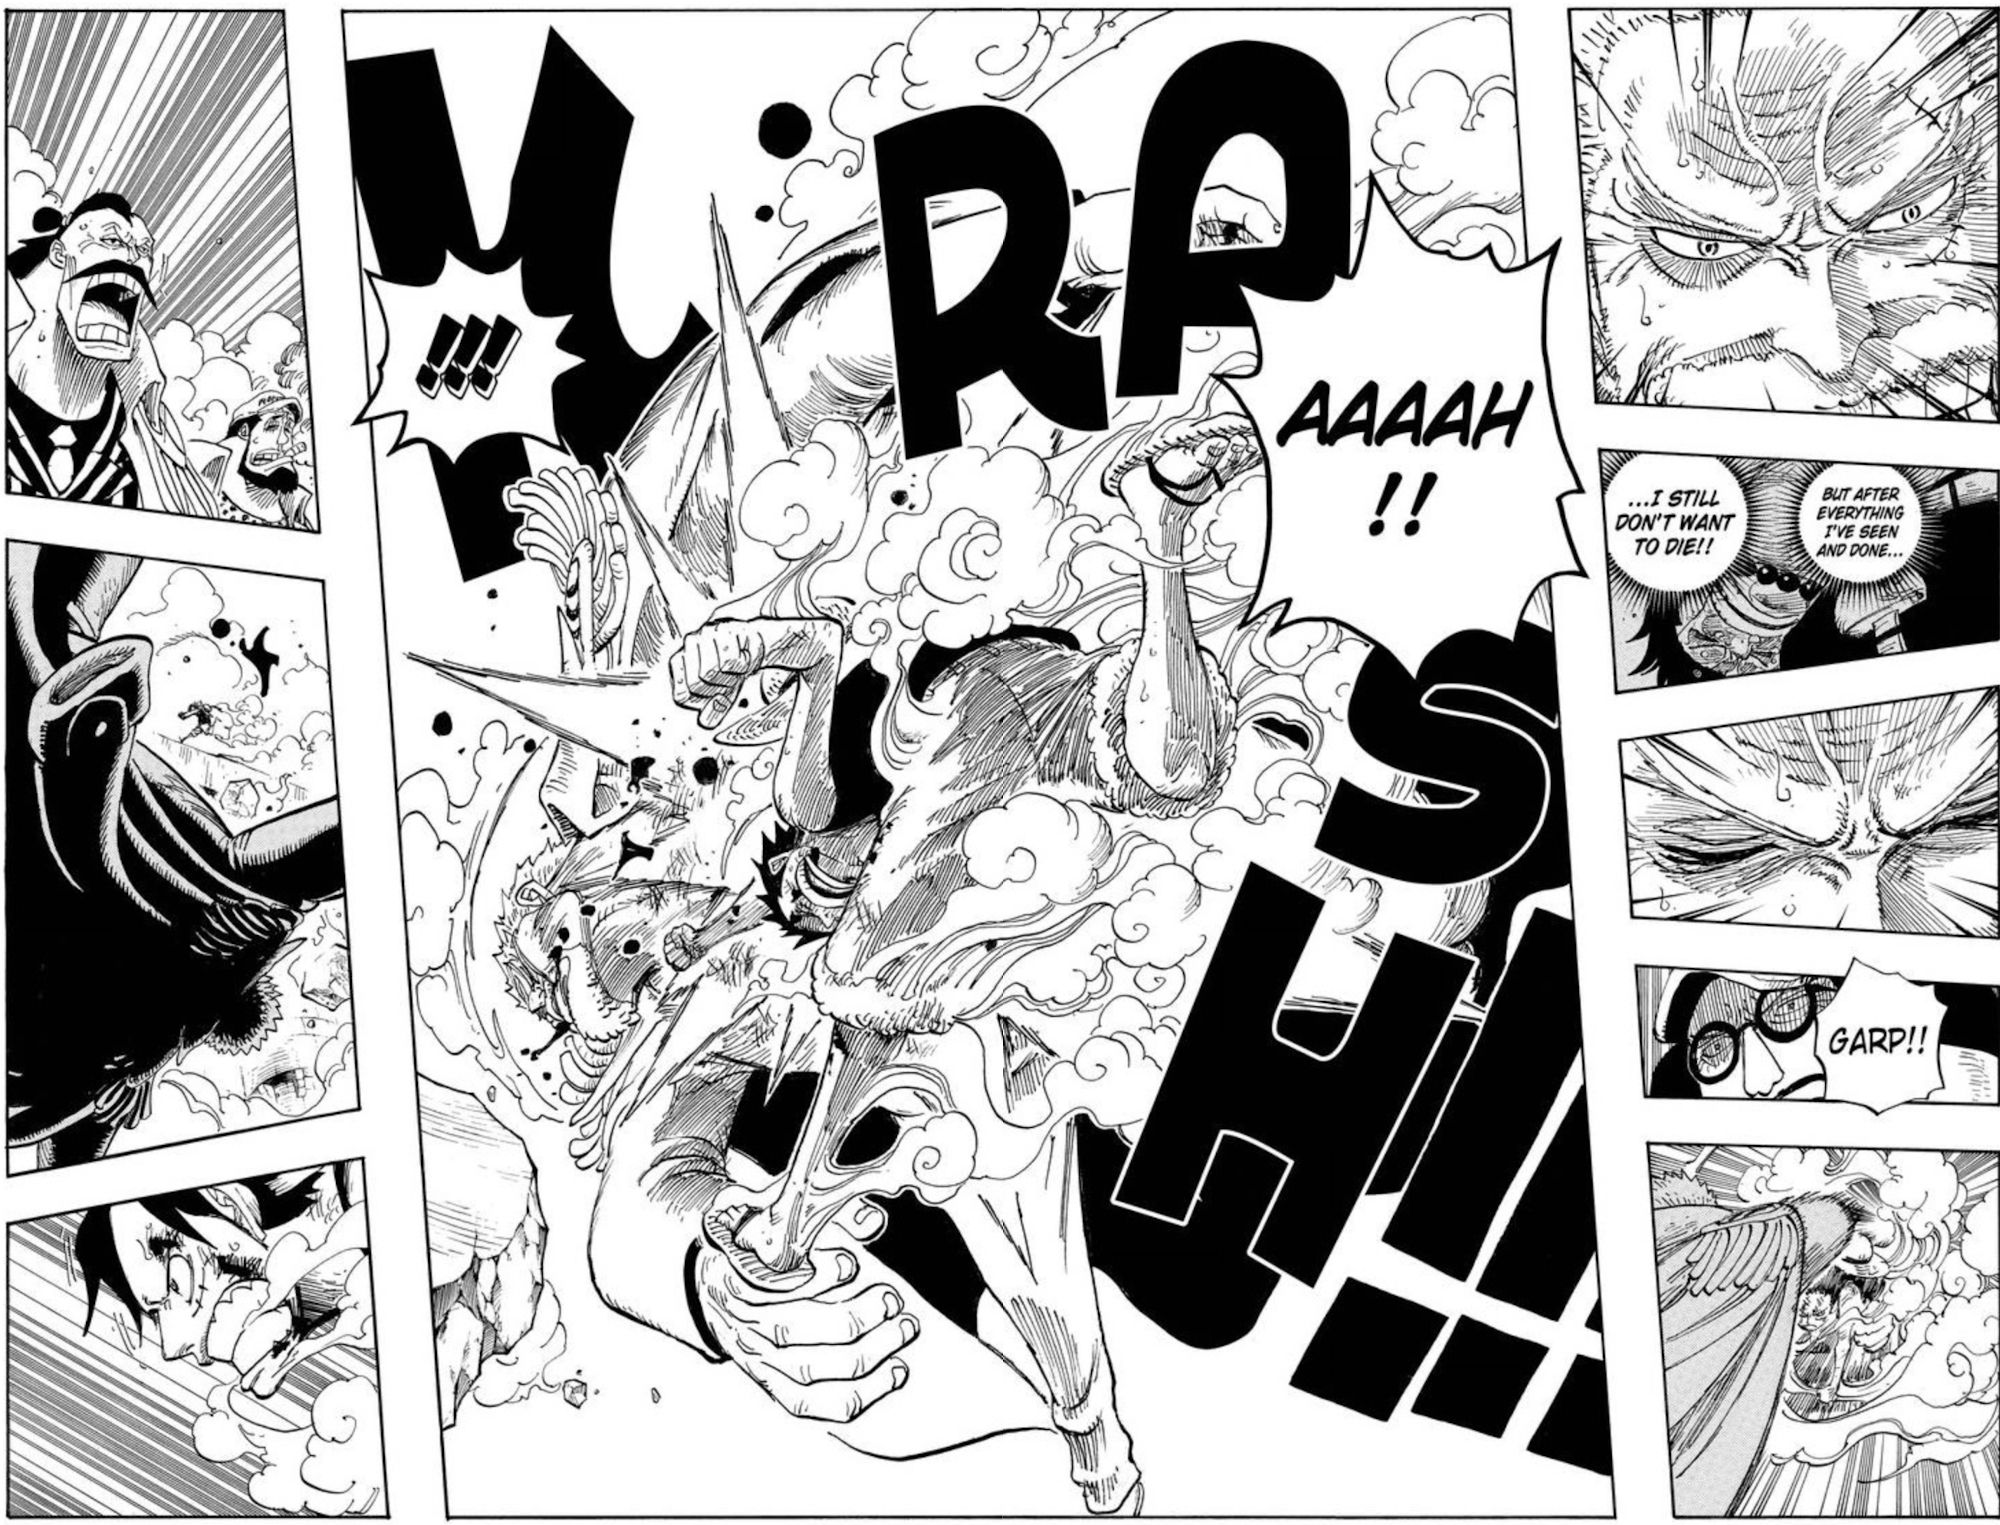 Halaman Manel dari One Piece chapter 571 menunjukkan Garp mencoba untuk menghentikan Luffy dari menyelamatkan Ace, dia menahan diri dan dipukul oleh Luffy saat sesama Marinir menyaksikan itu terjadi.